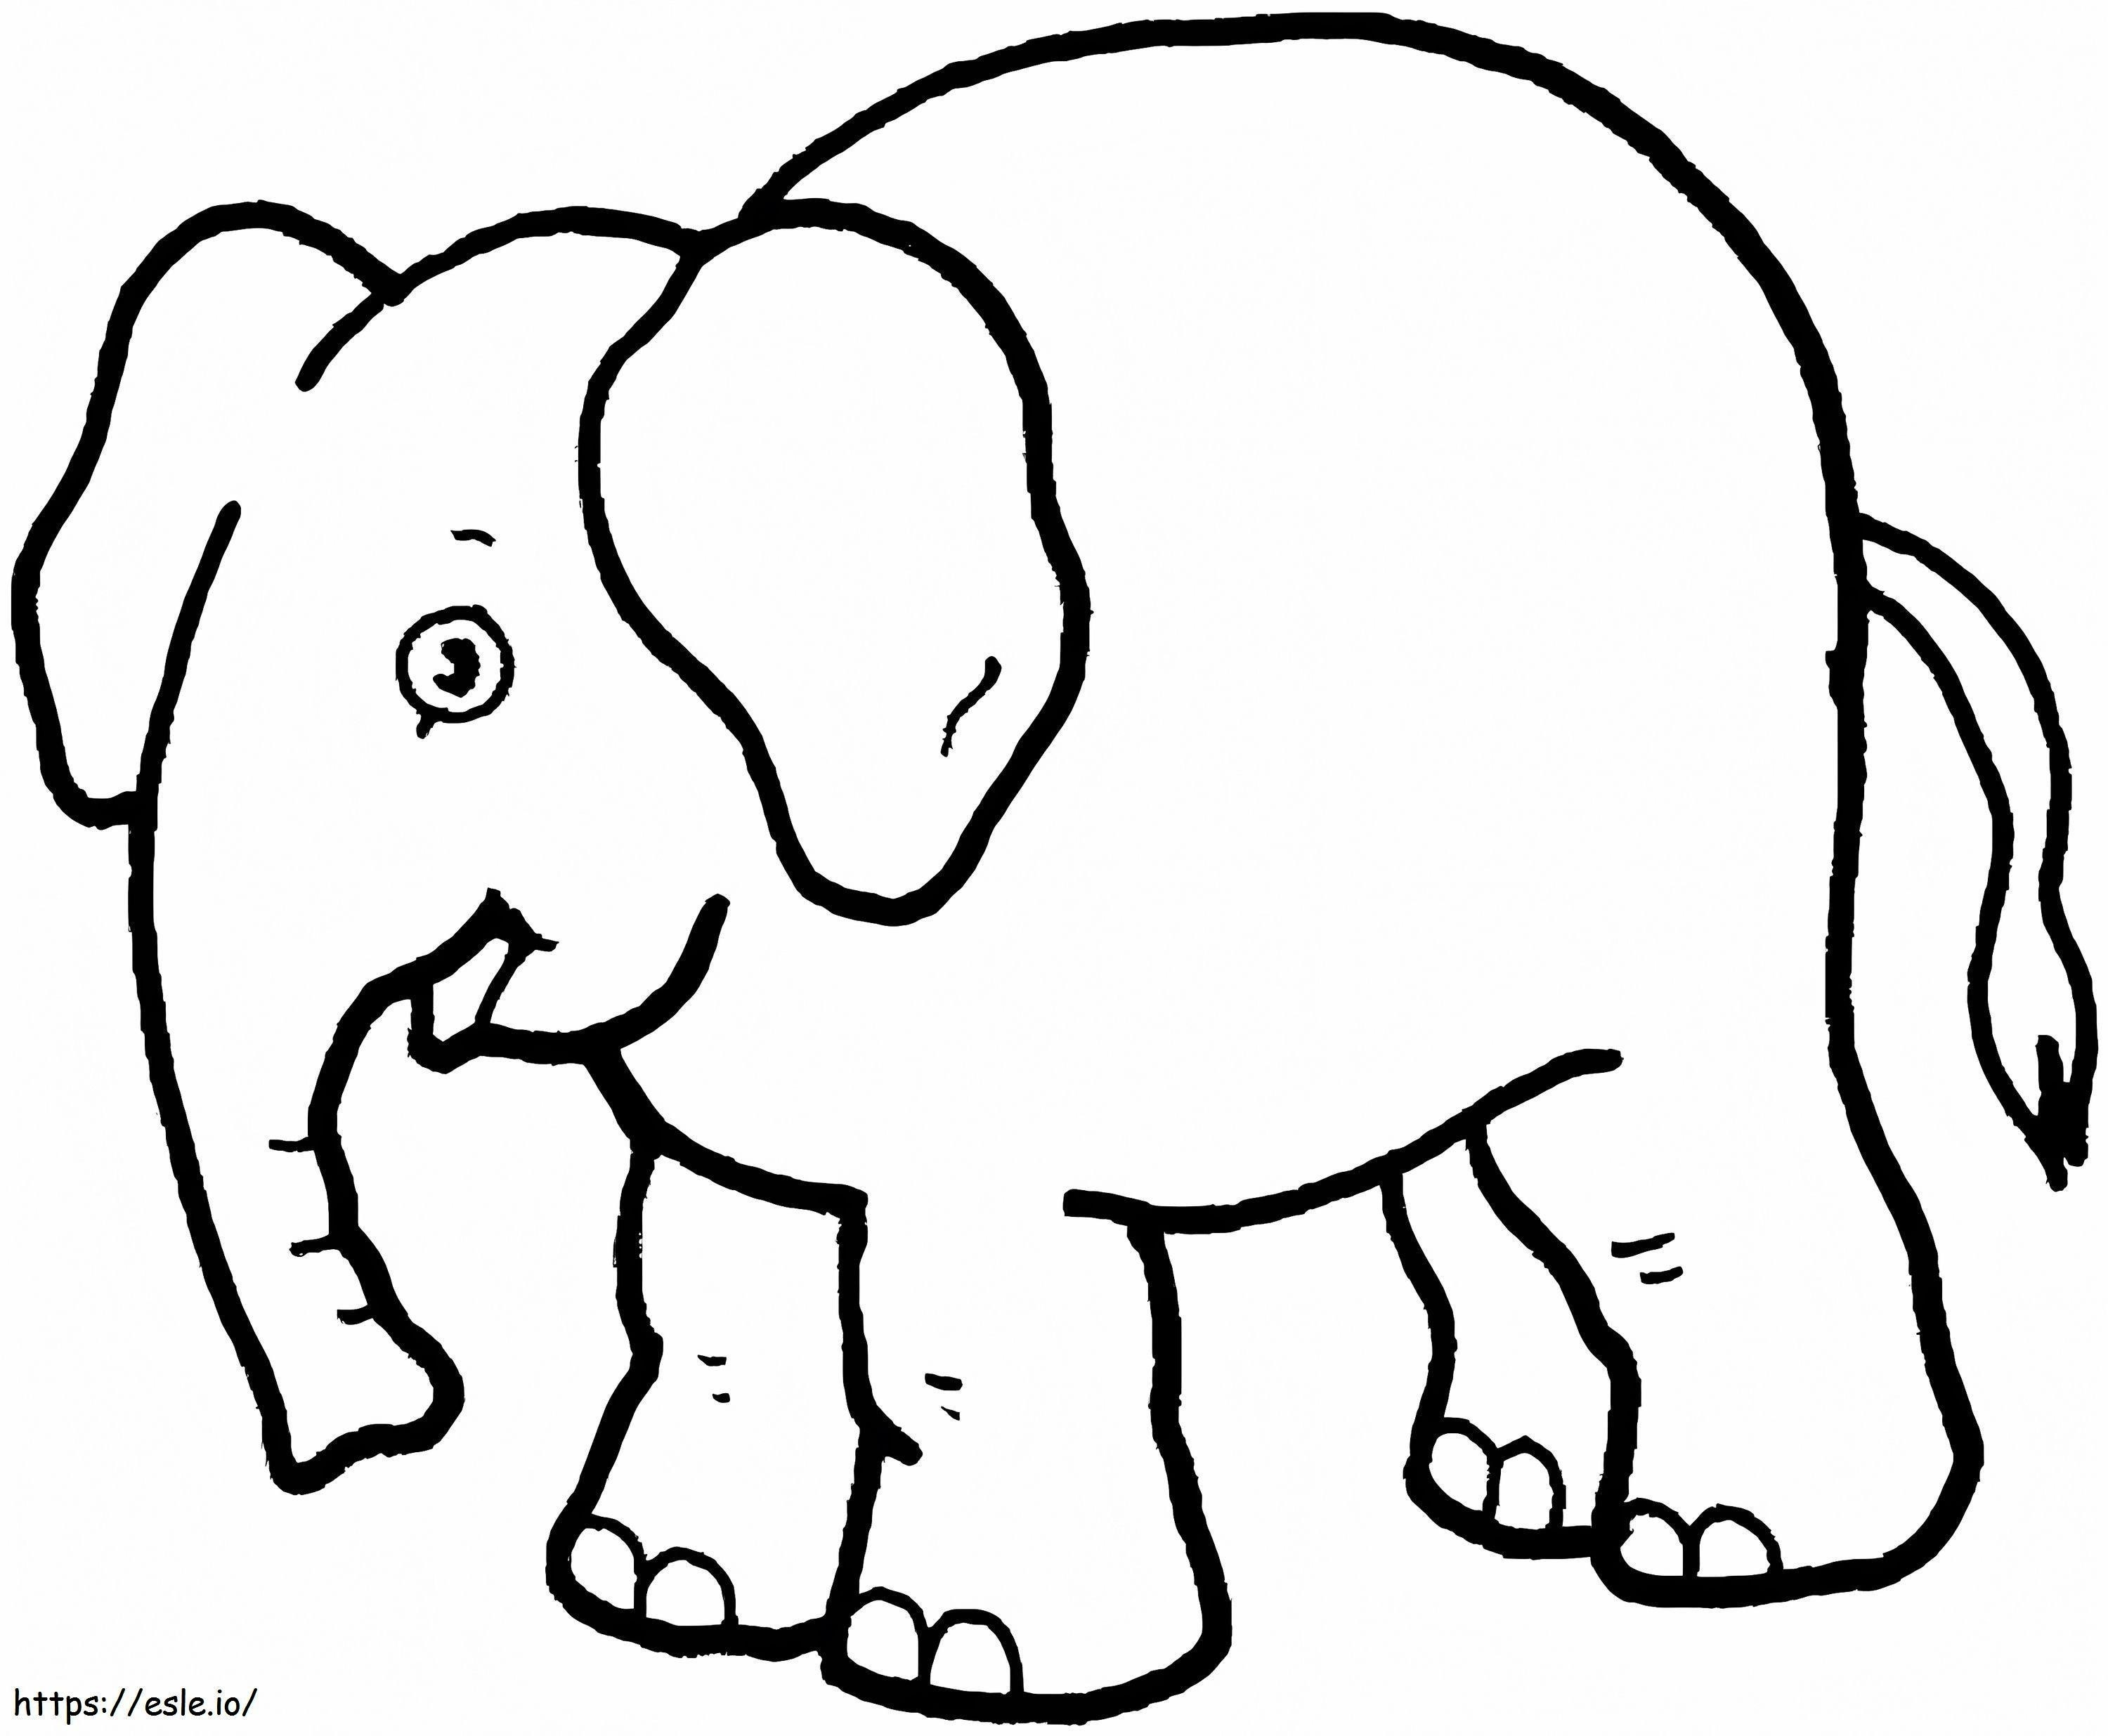 Coloriage Un drôle d'éléphant à imprimer dessin